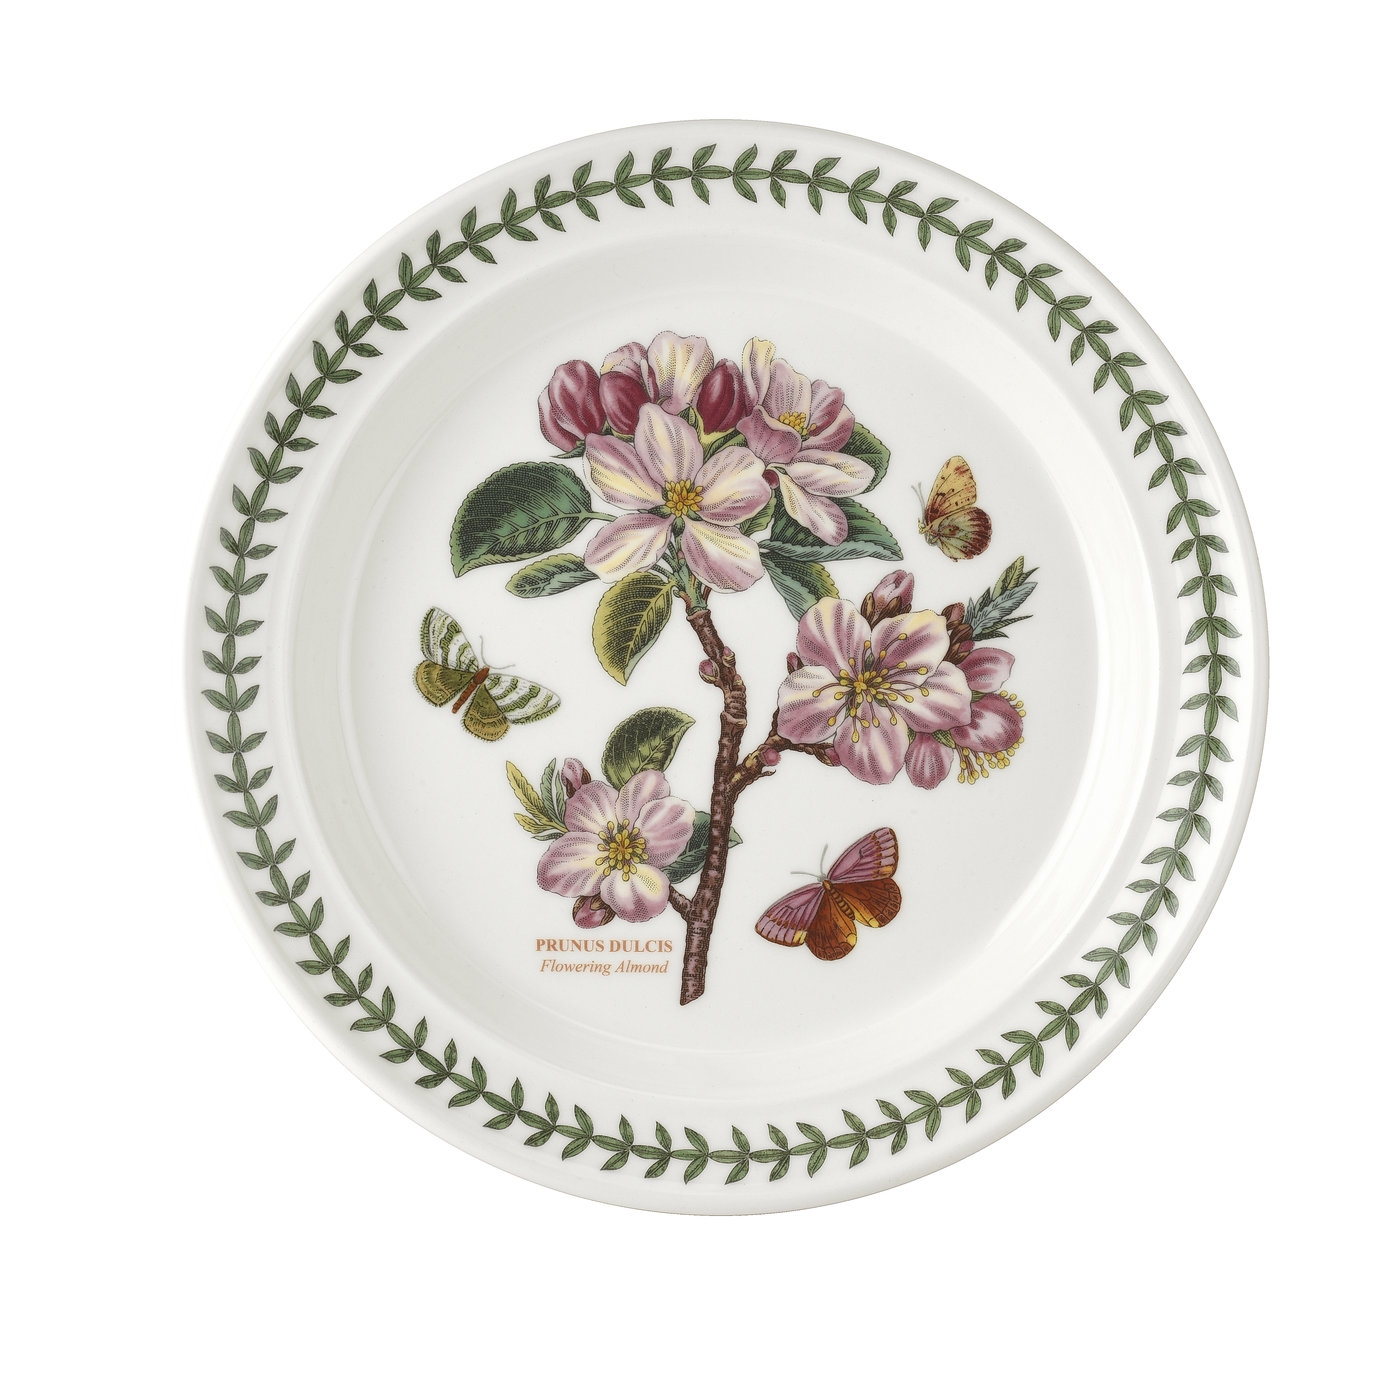 Botanic Garden 10.5 Inch Dinner Plate (Flowering Almond) image number null